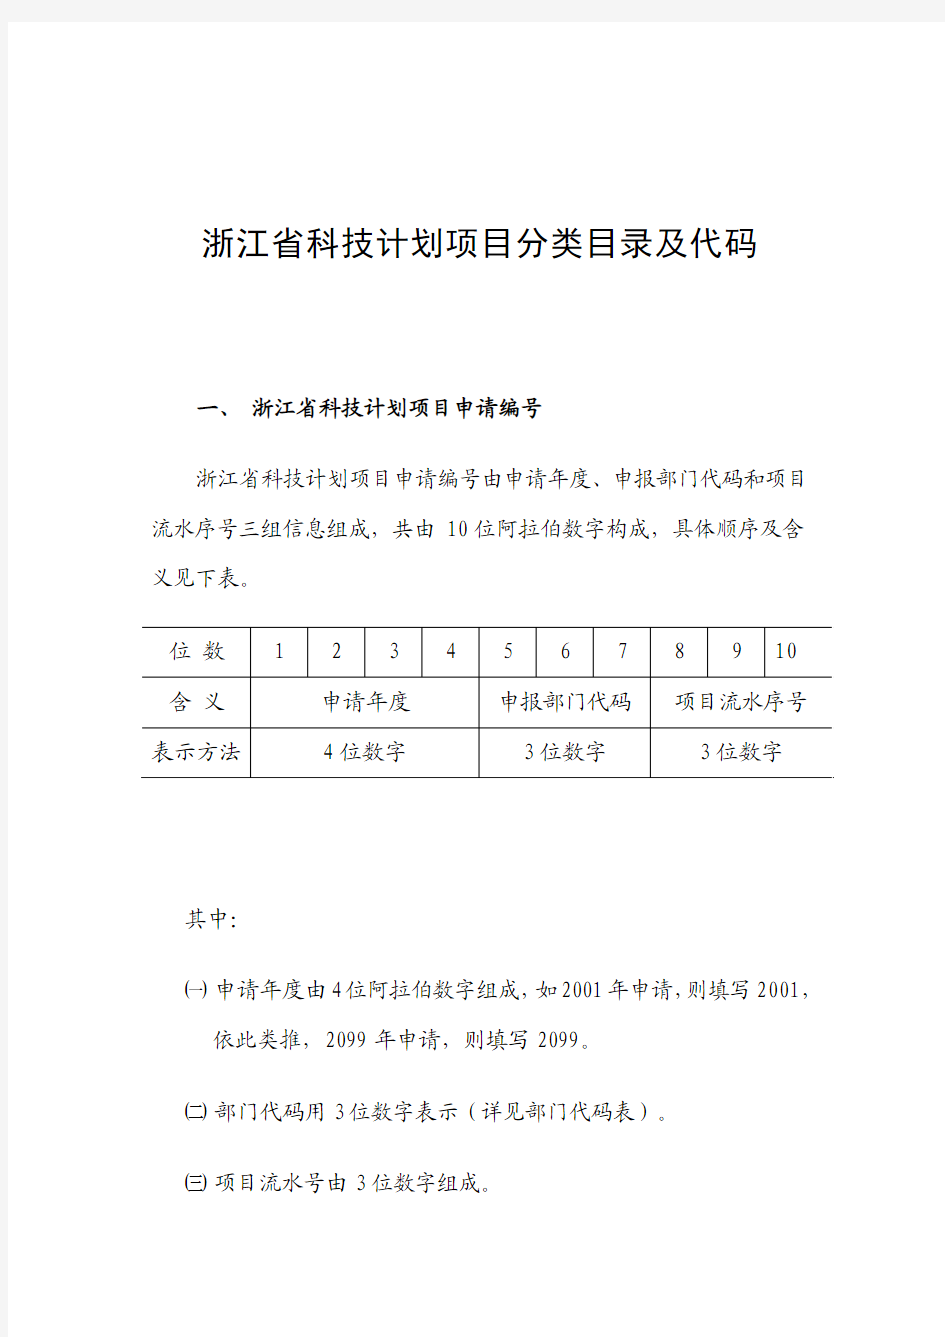 浙江省科技计划项目分类目录及代码